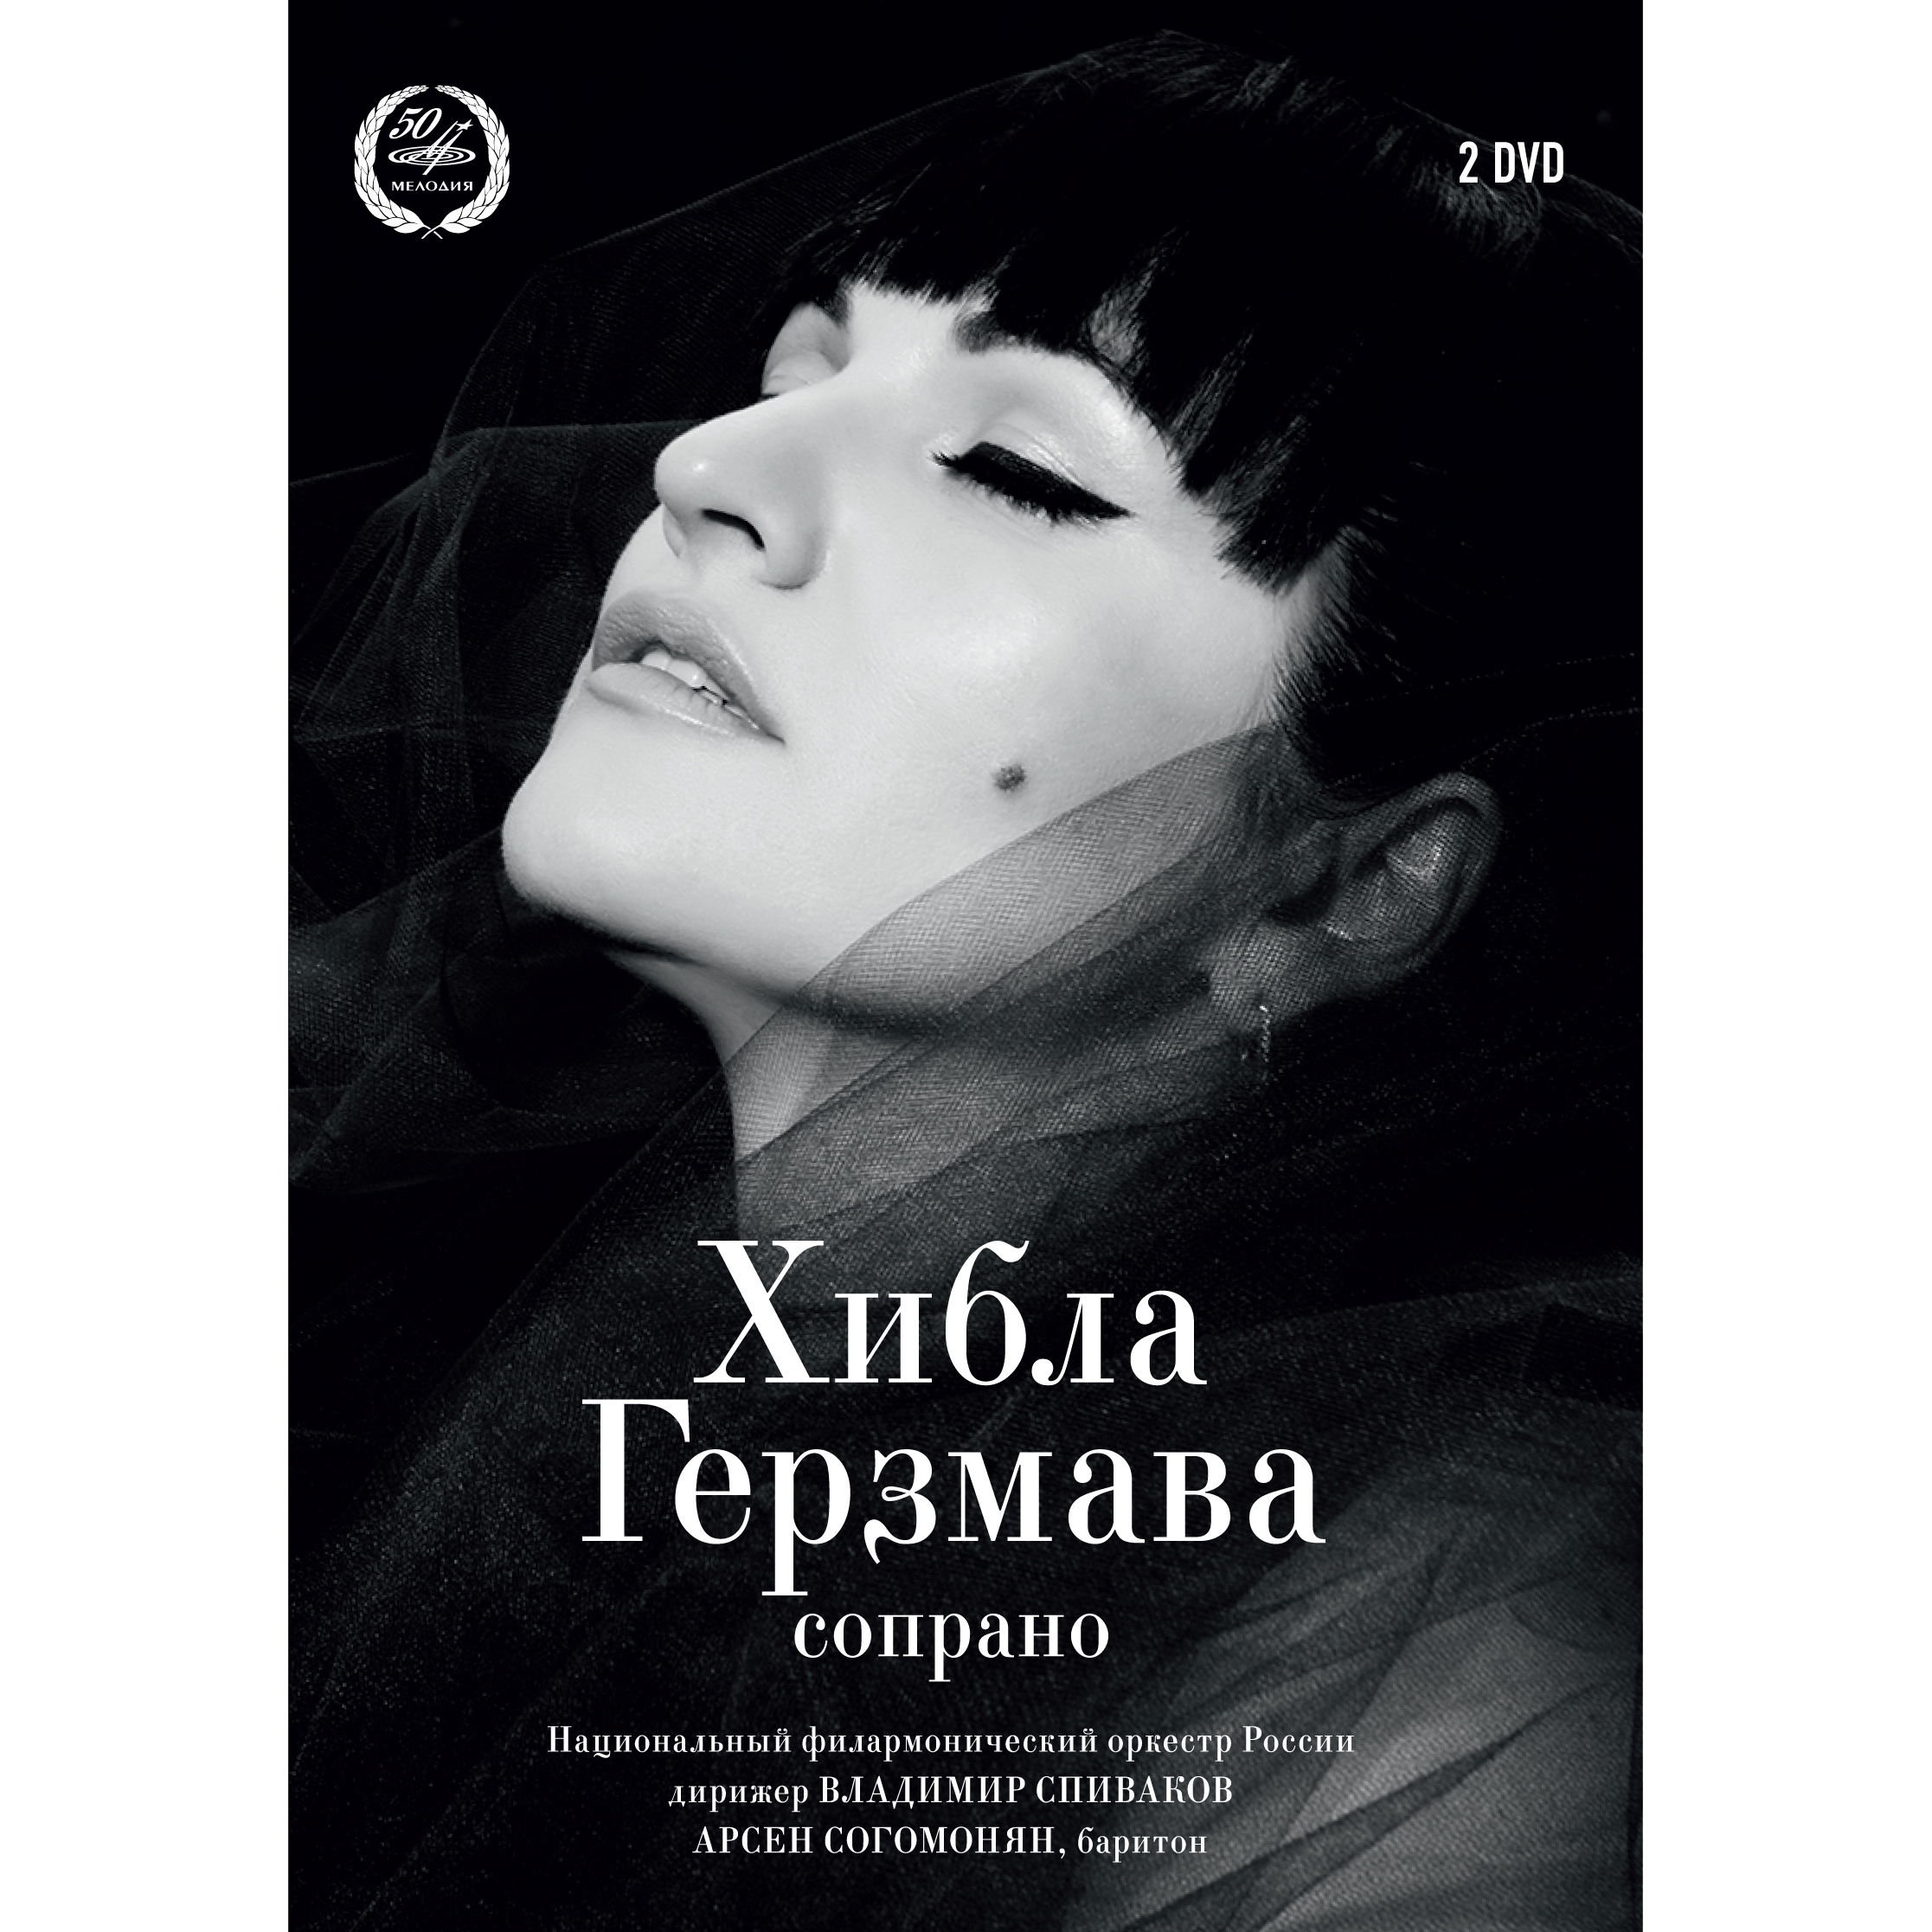 Хибла Герзмава (сопрано) (DVD)